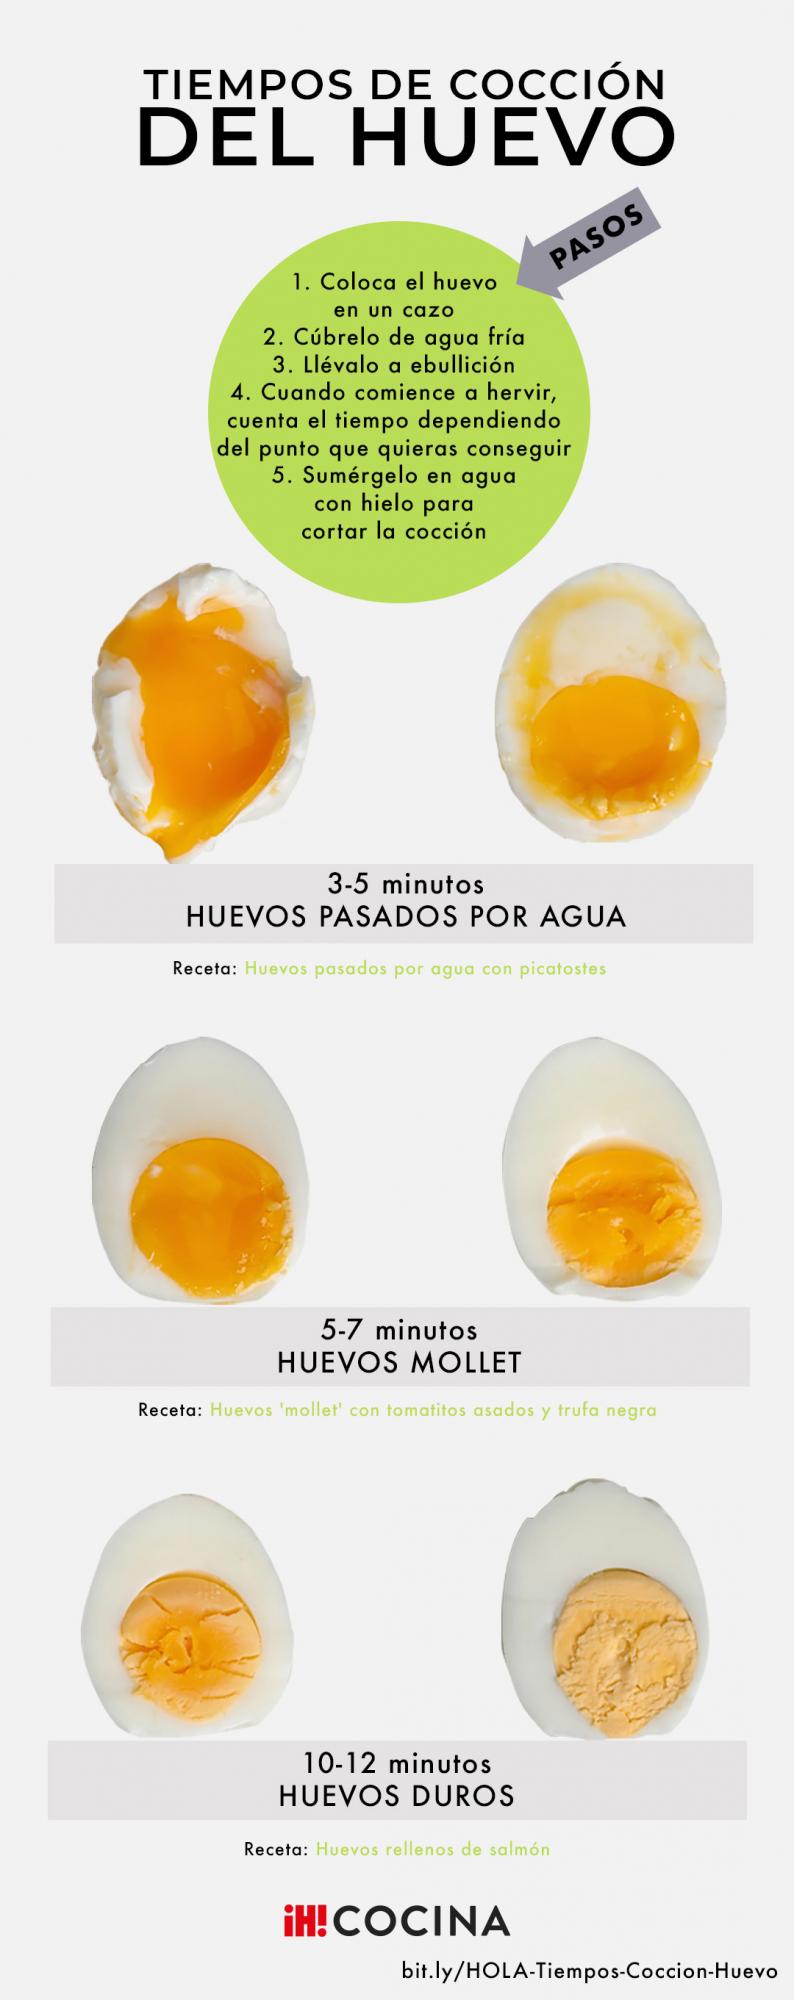 Tiempos de cocción del huevo